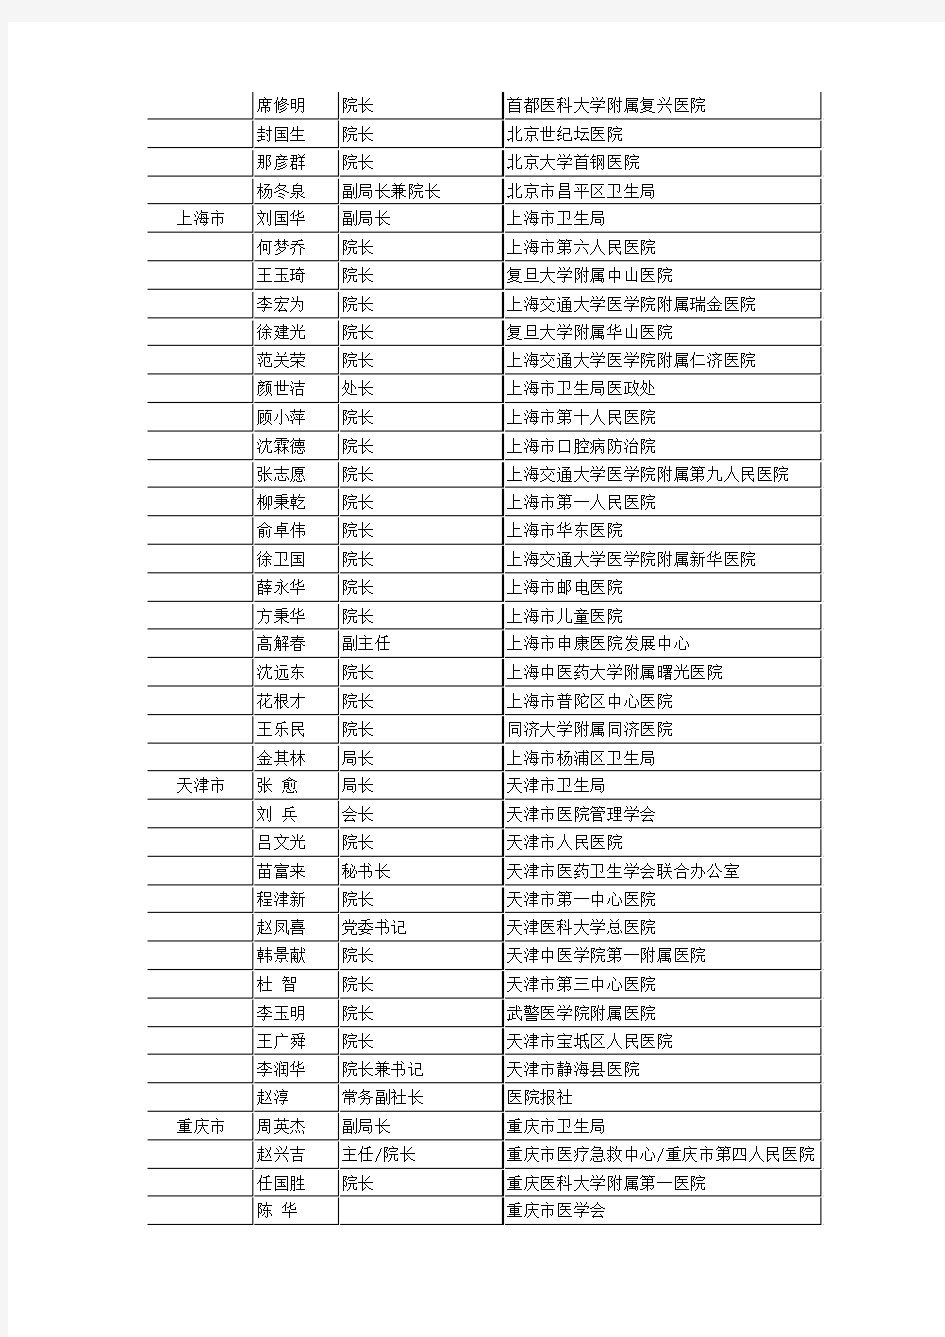 中国医院协会第一届理事名单